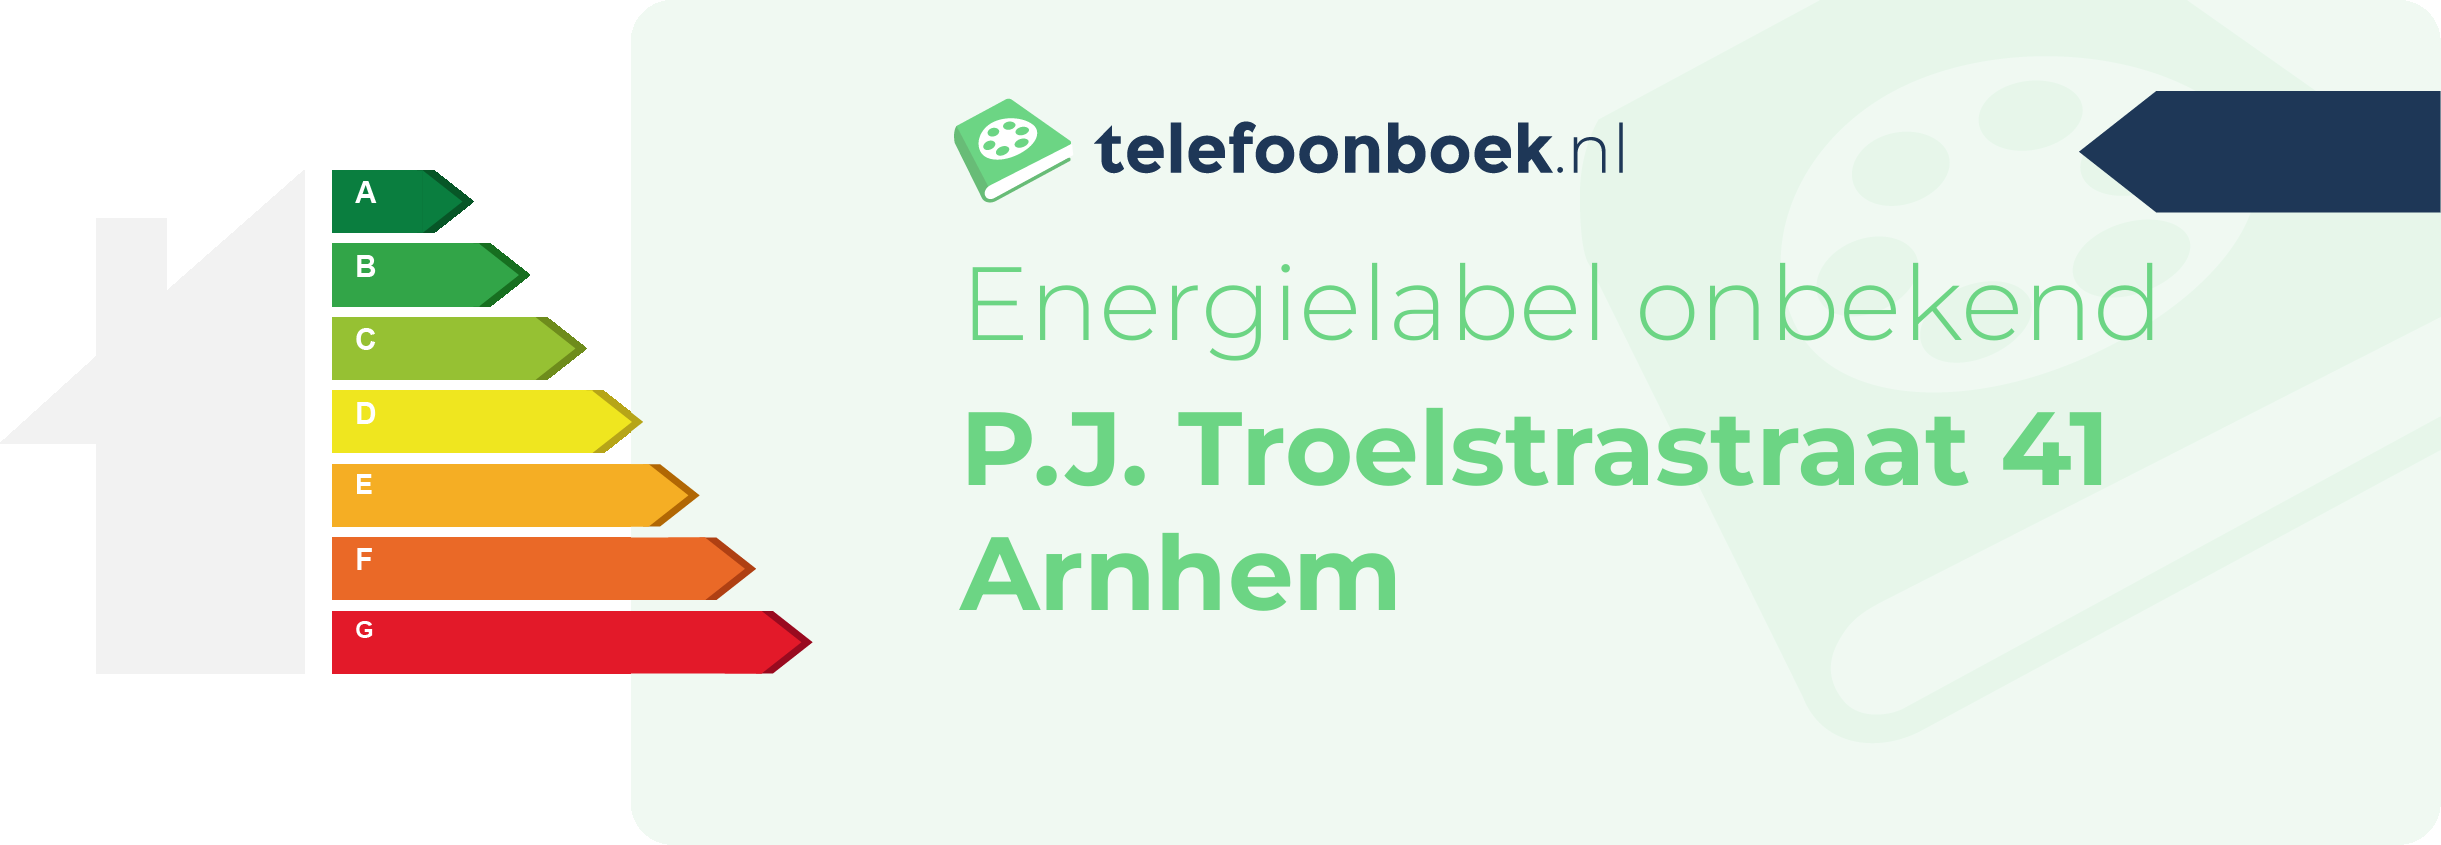 Energielabel P.J. Troelstrastraat 41 Arnhem